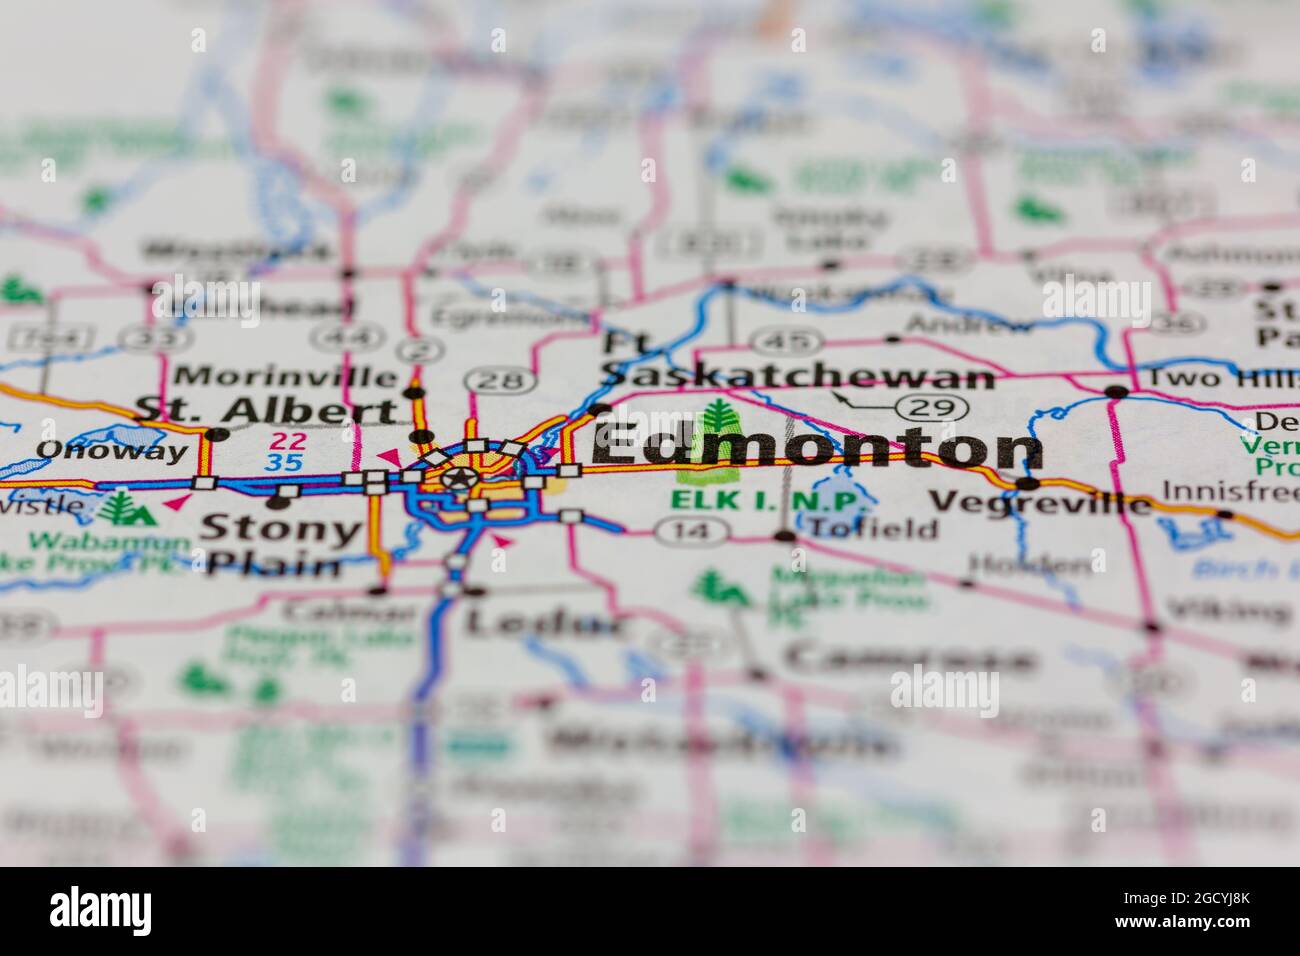 Edmonton Alberta Canada visualizzato su una mappa stradale o su una mappa geografica Foto Stock